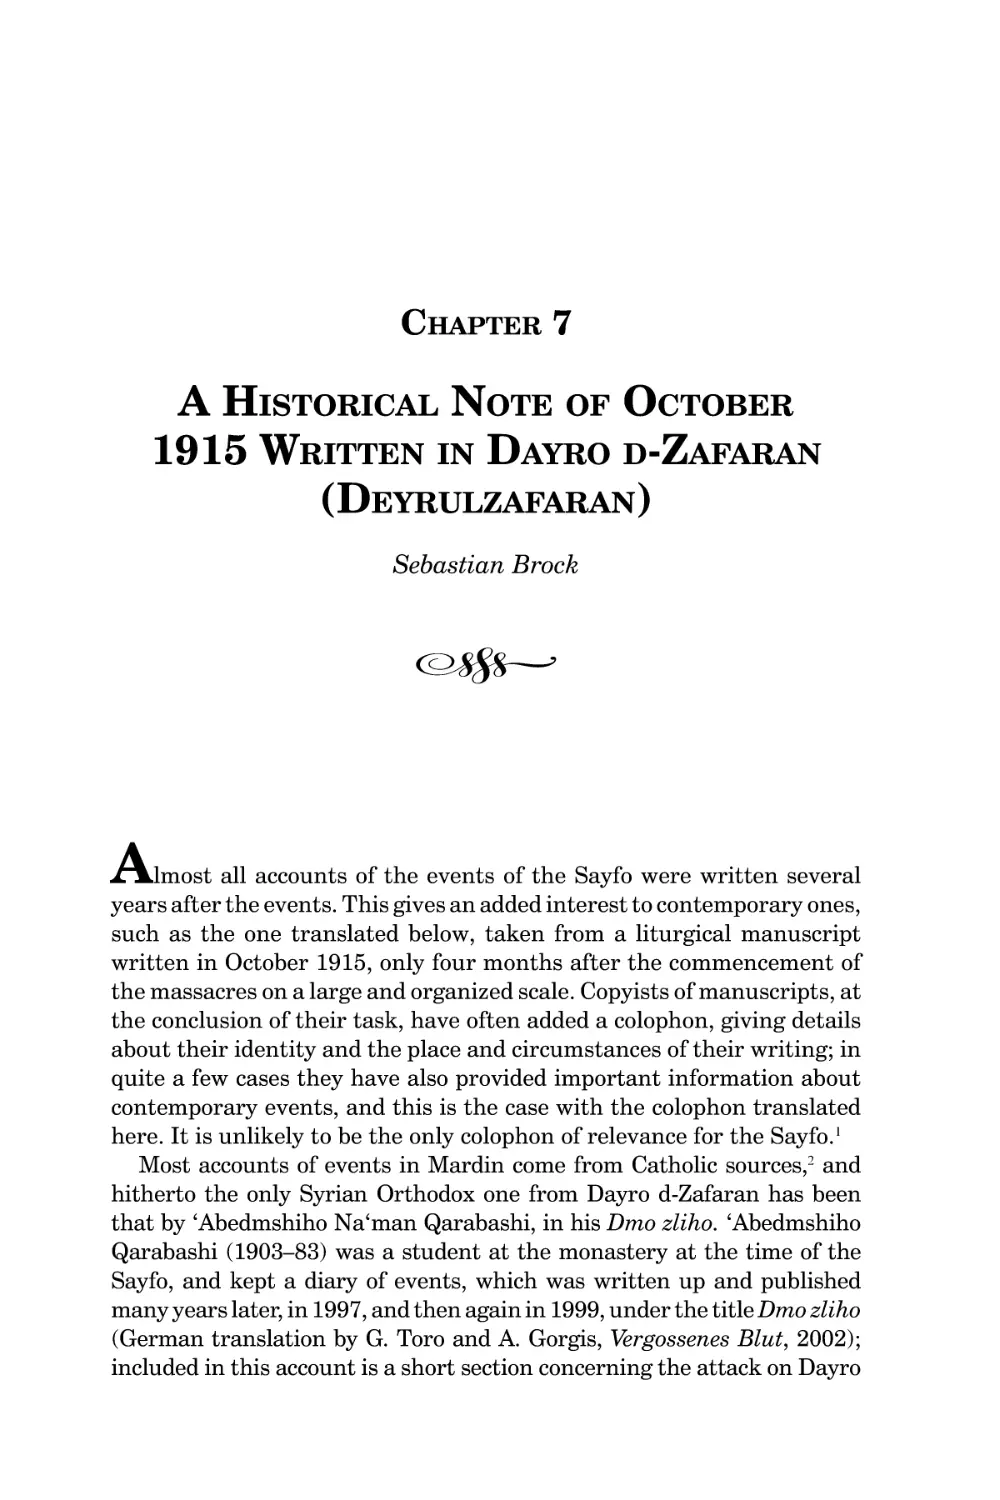 Chapter 7 A Historical Note of October 1915 Written in Dayro d-Zafaran (Deyrulzafaran)